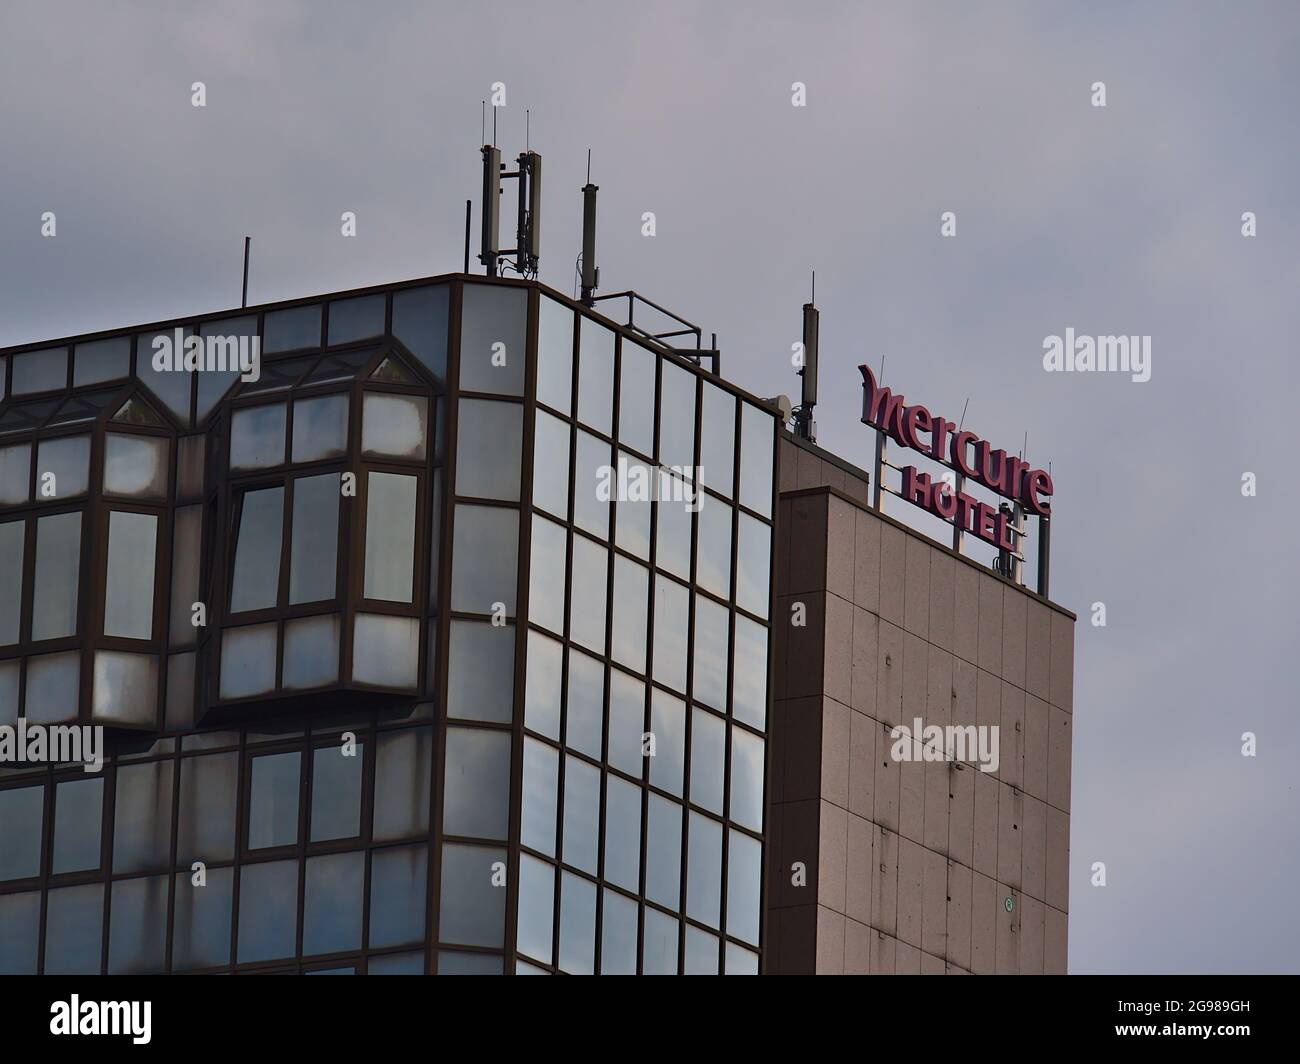 Oberer Teil des Mercure Hotels im Zentrum von Koblenz, Teil der französischen Accor S.A., in einem Gebäude mit Business-Logo und verwitterter Glasfassade. Stockfoto